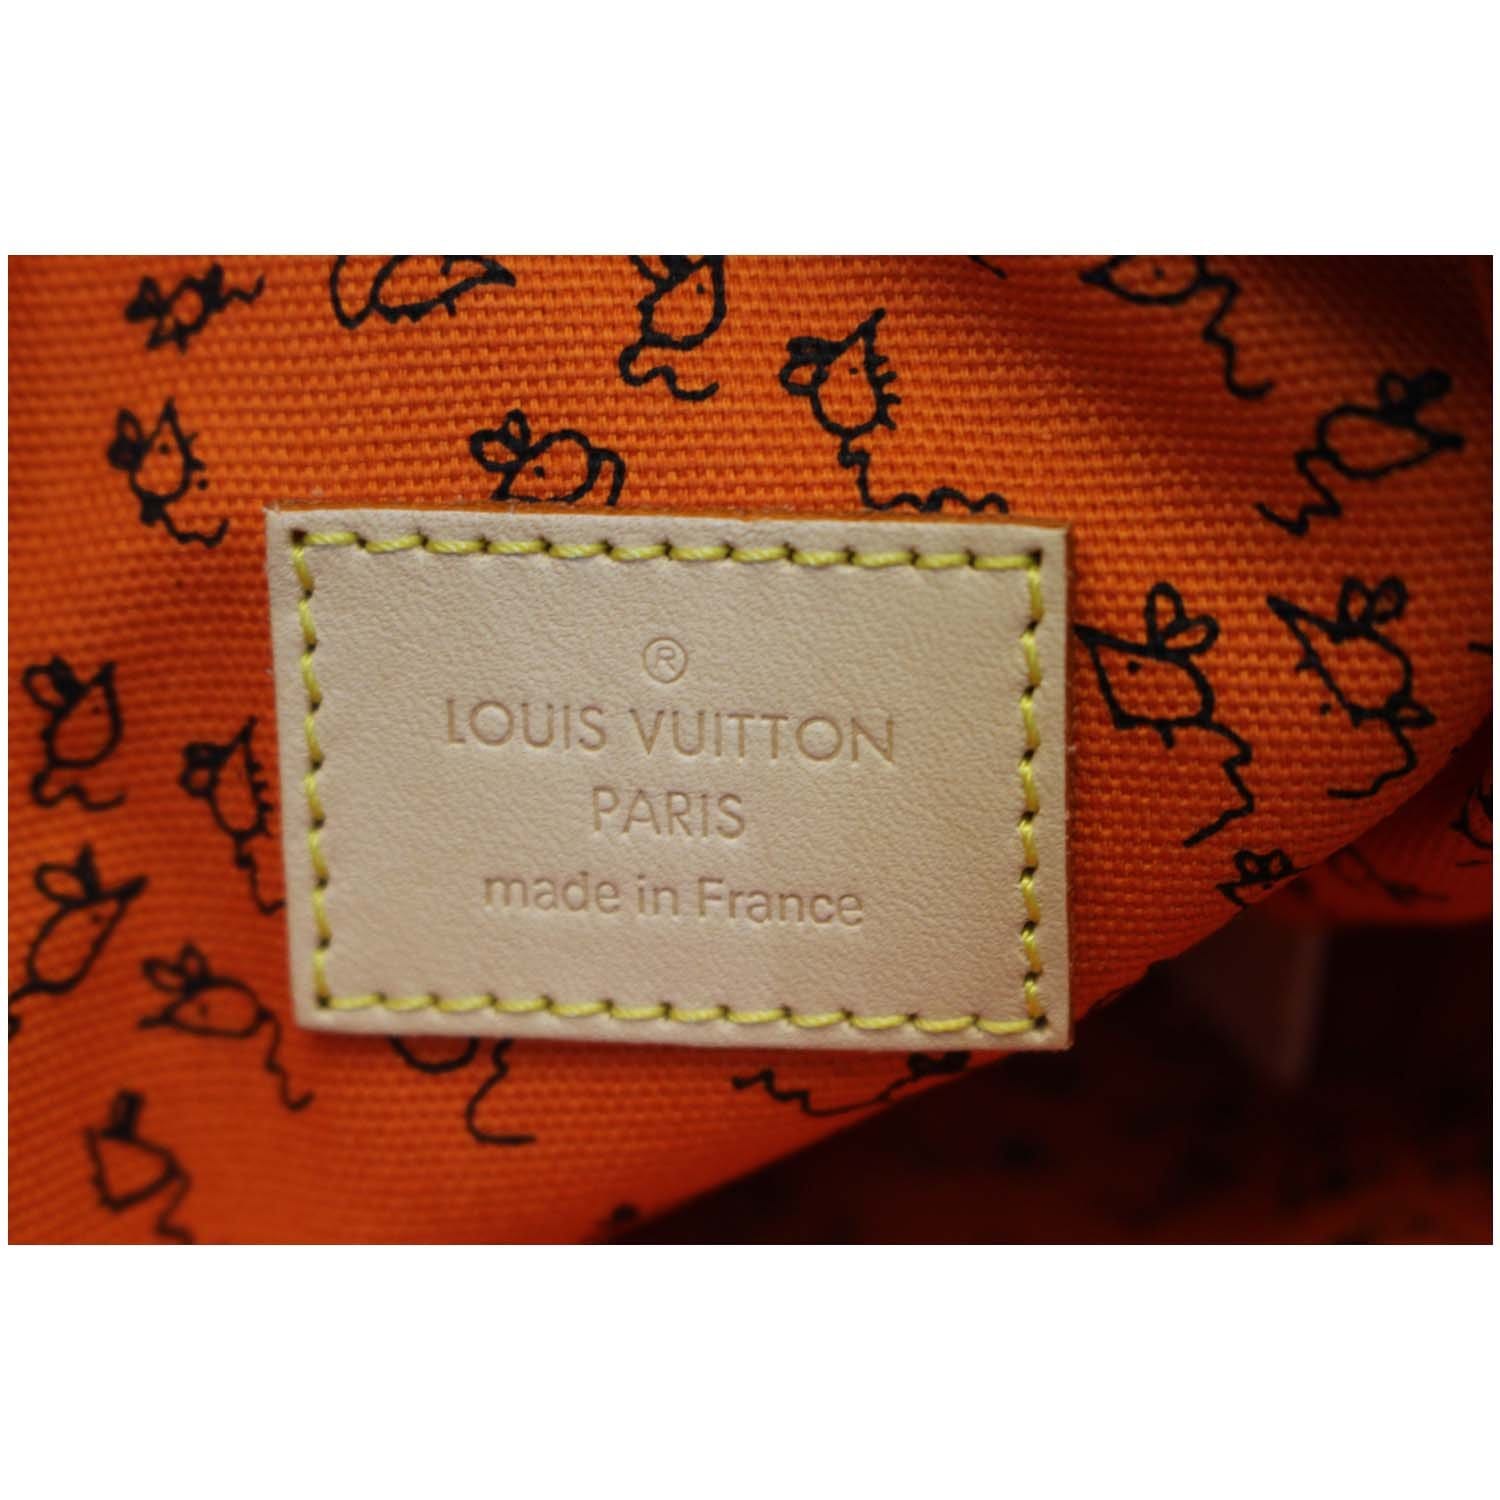 Louis Vuitton Neverfull Nm Tote Limited Edition Grace Coddington Catogram  Canvas Mm Auction